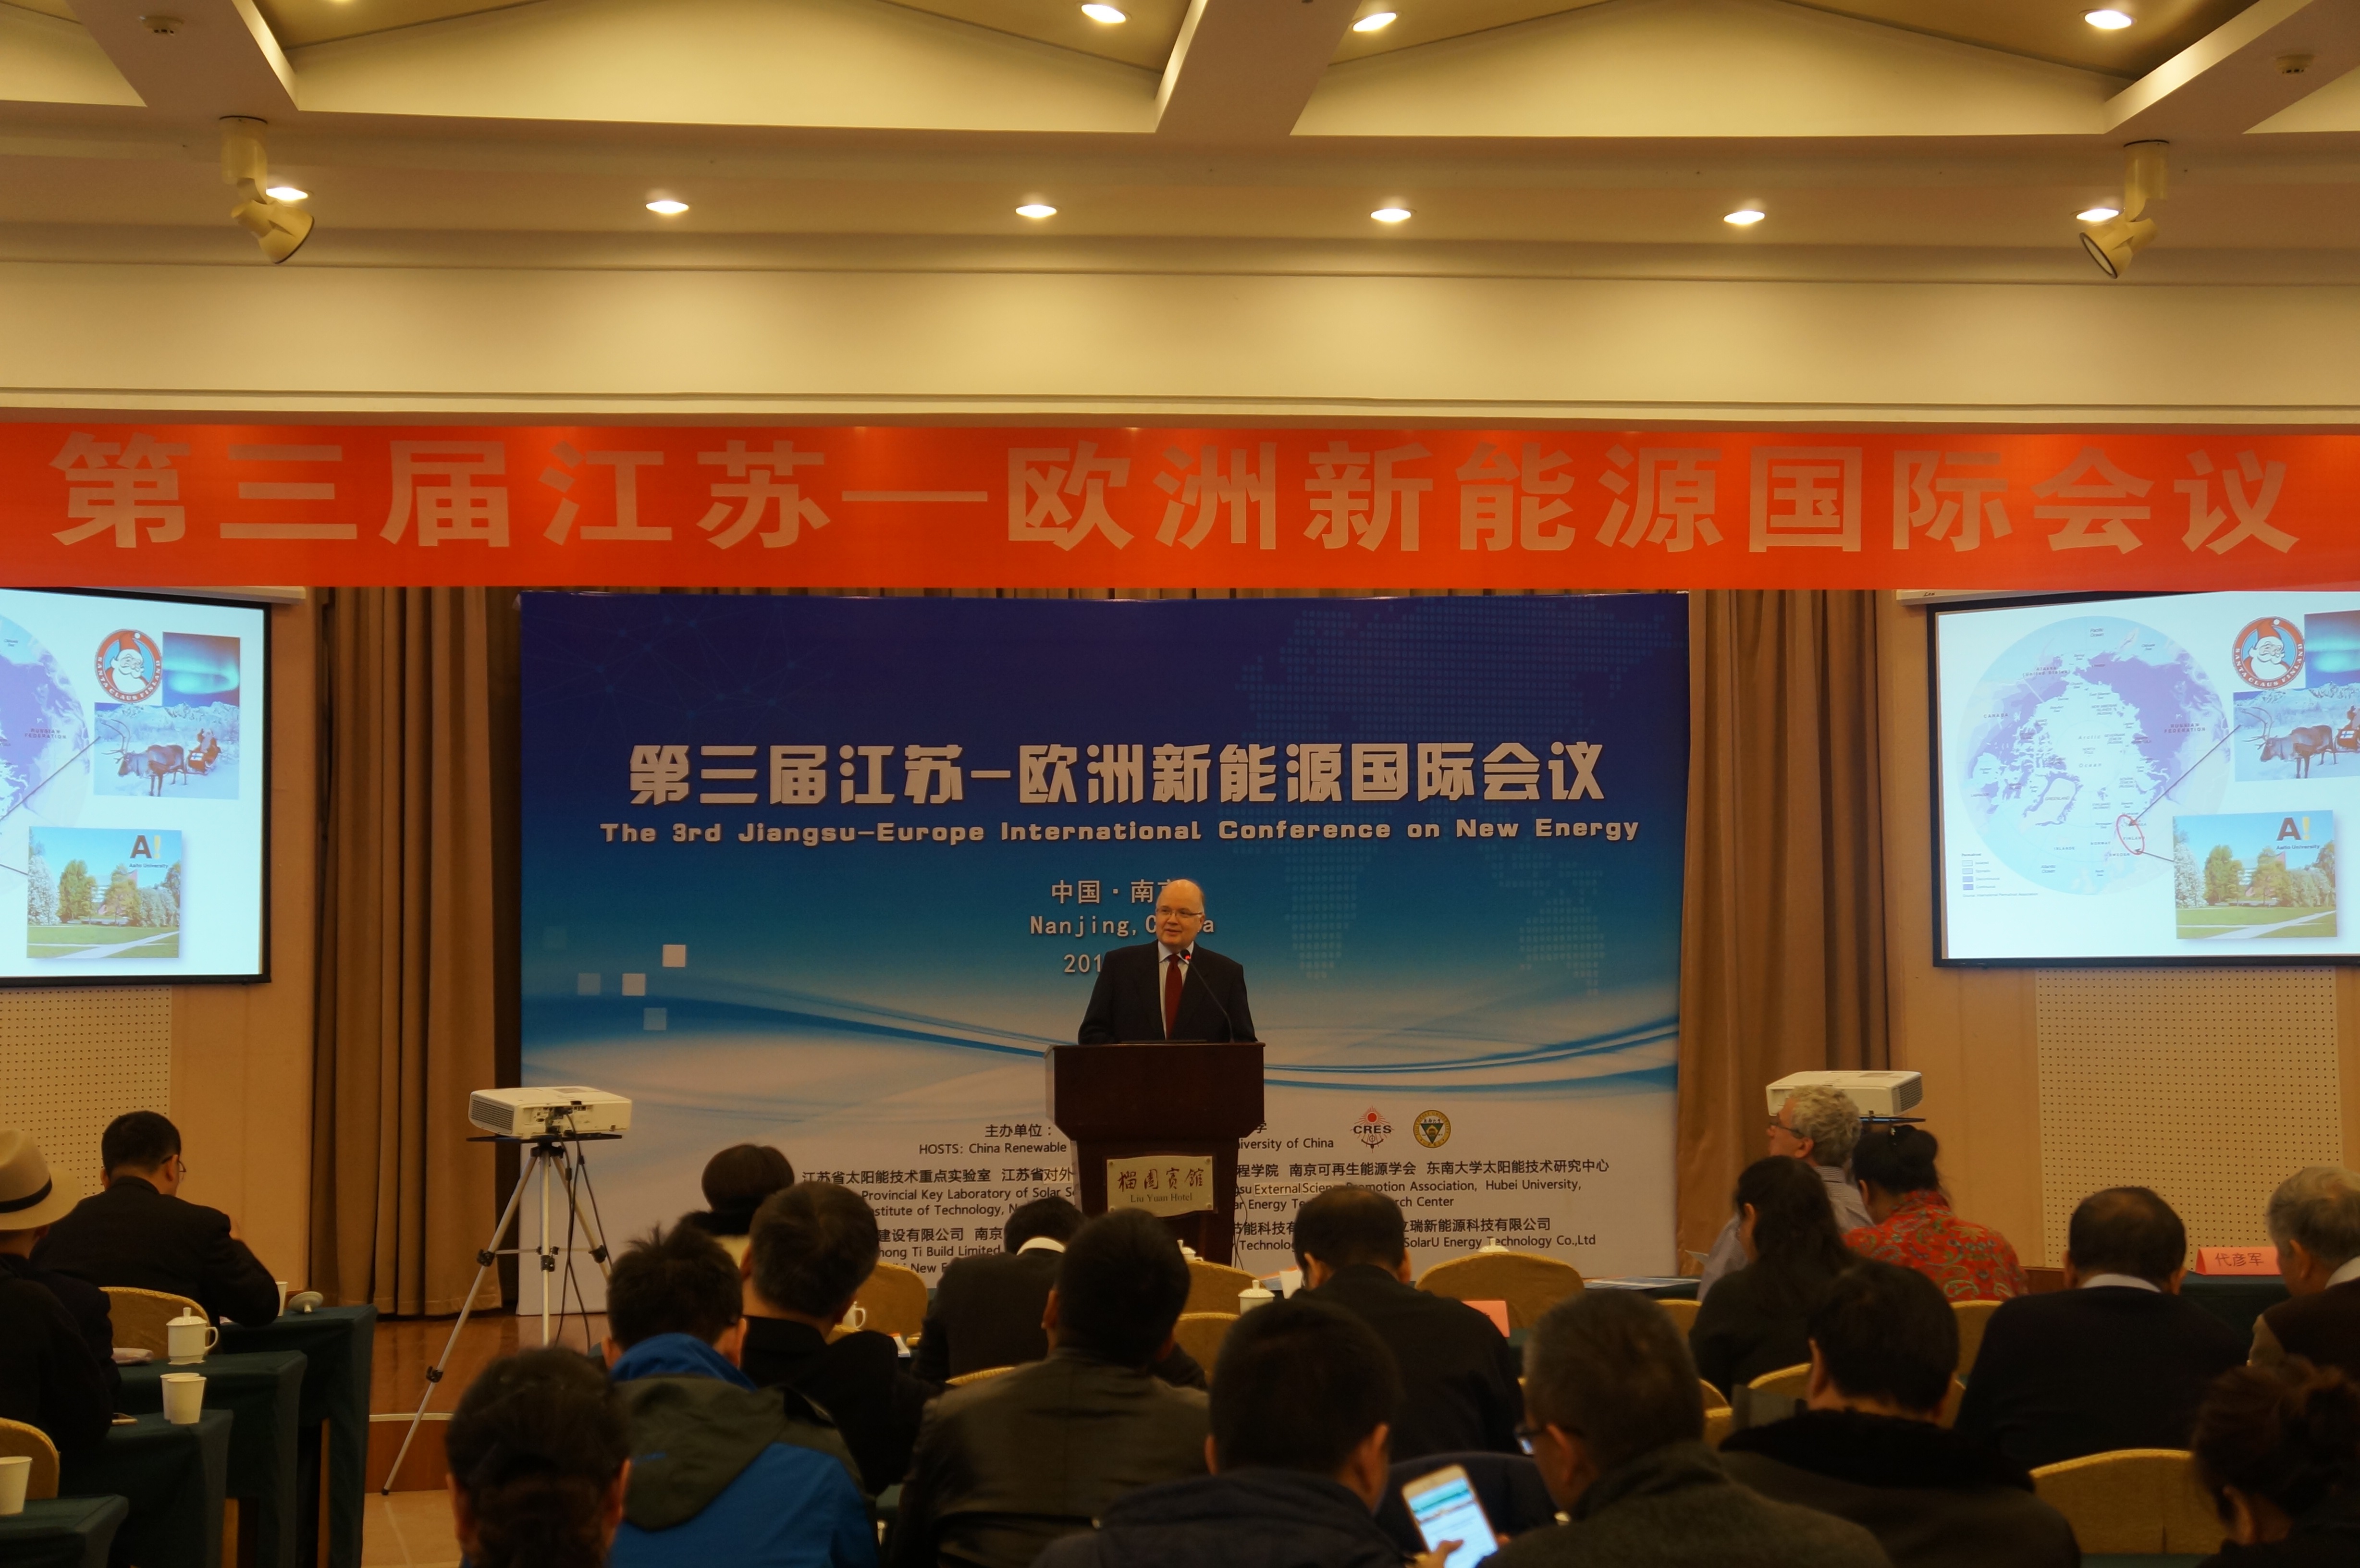 澳门十大娱乐网站是多少:Tan Tianwei was elected as the new chairman of China Renewable Energy Society